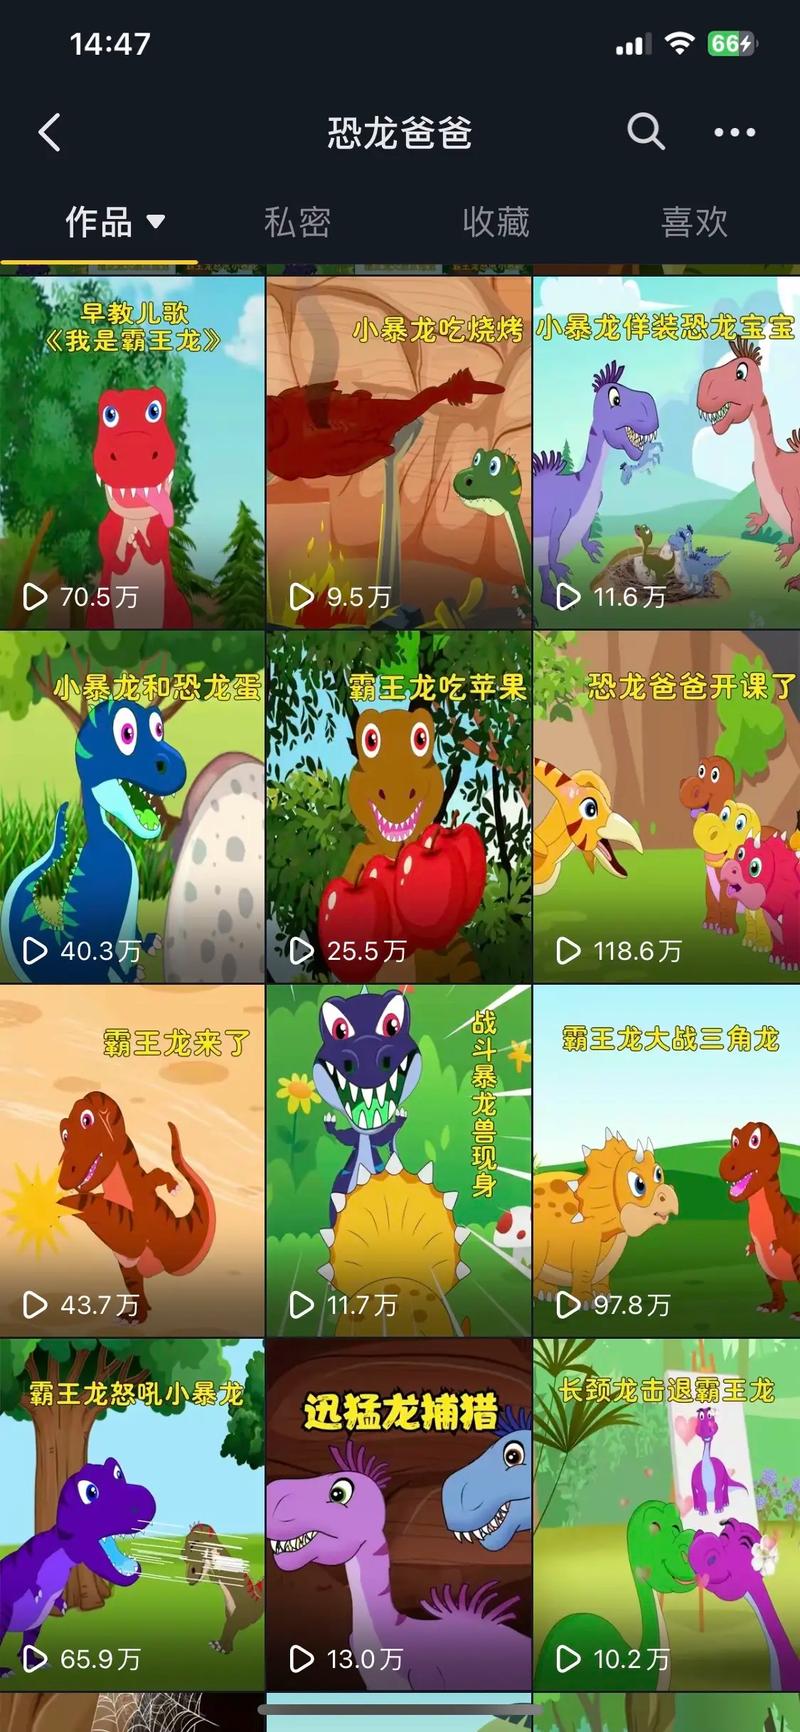 大恐龙动画片全集大全视频